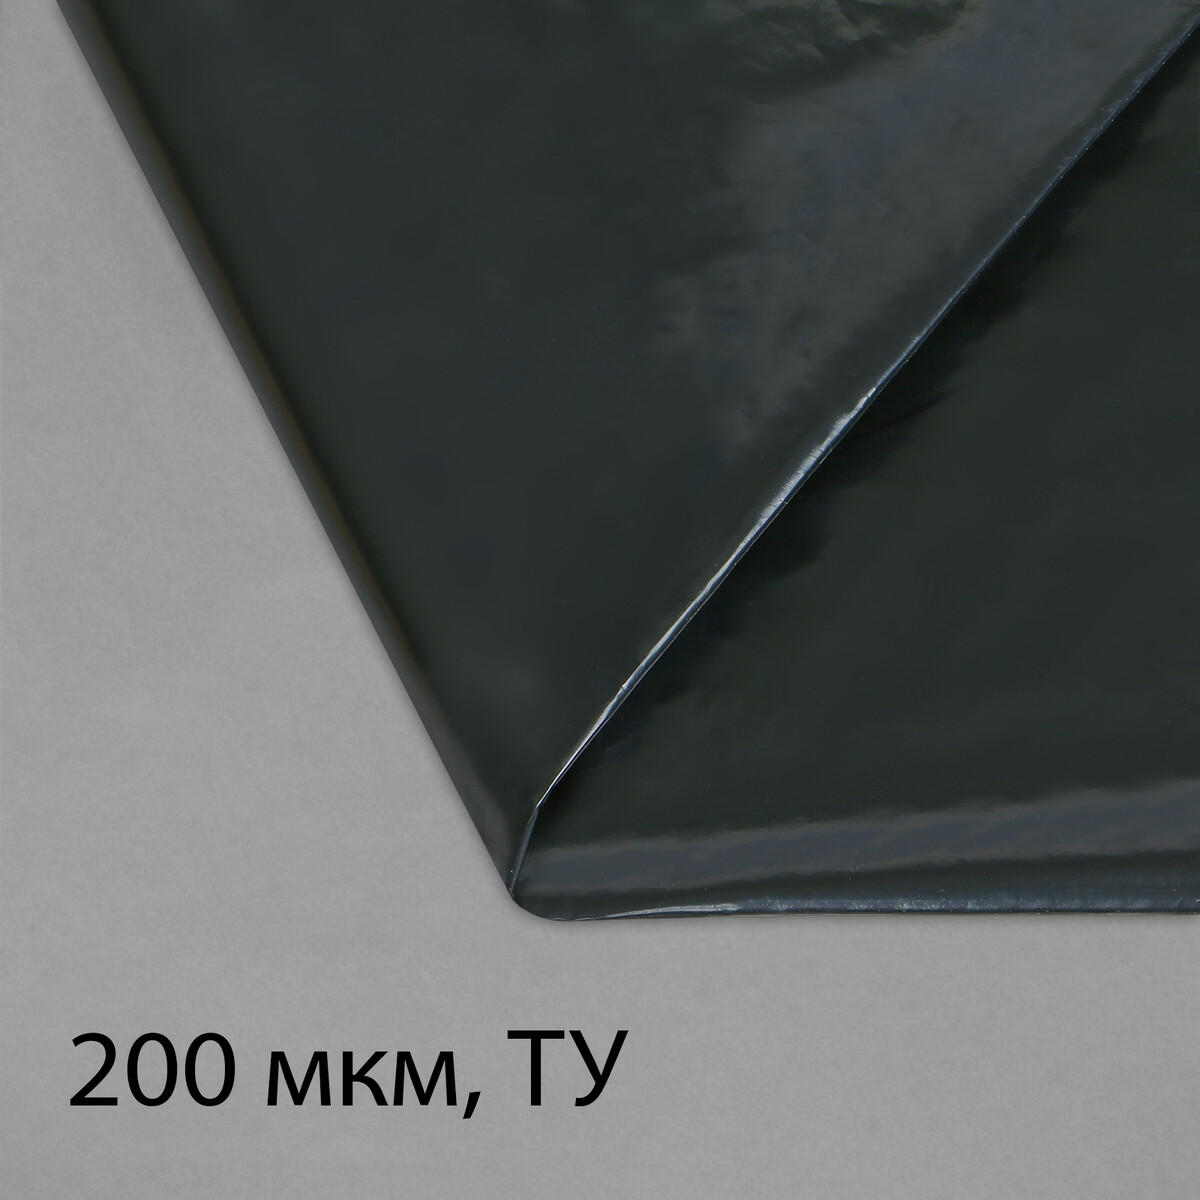 Пленка полиэтиленовая, техническая, толщина 200 мкм, 5 × 3 м, рукав (1,5 м × 2), черная, 2 сорт, эконом 50 % пленка полиэтиленовая толщина 200 мкм прозрачная 5 × 3 м рукав 1 5 × 2 м эконом 50%